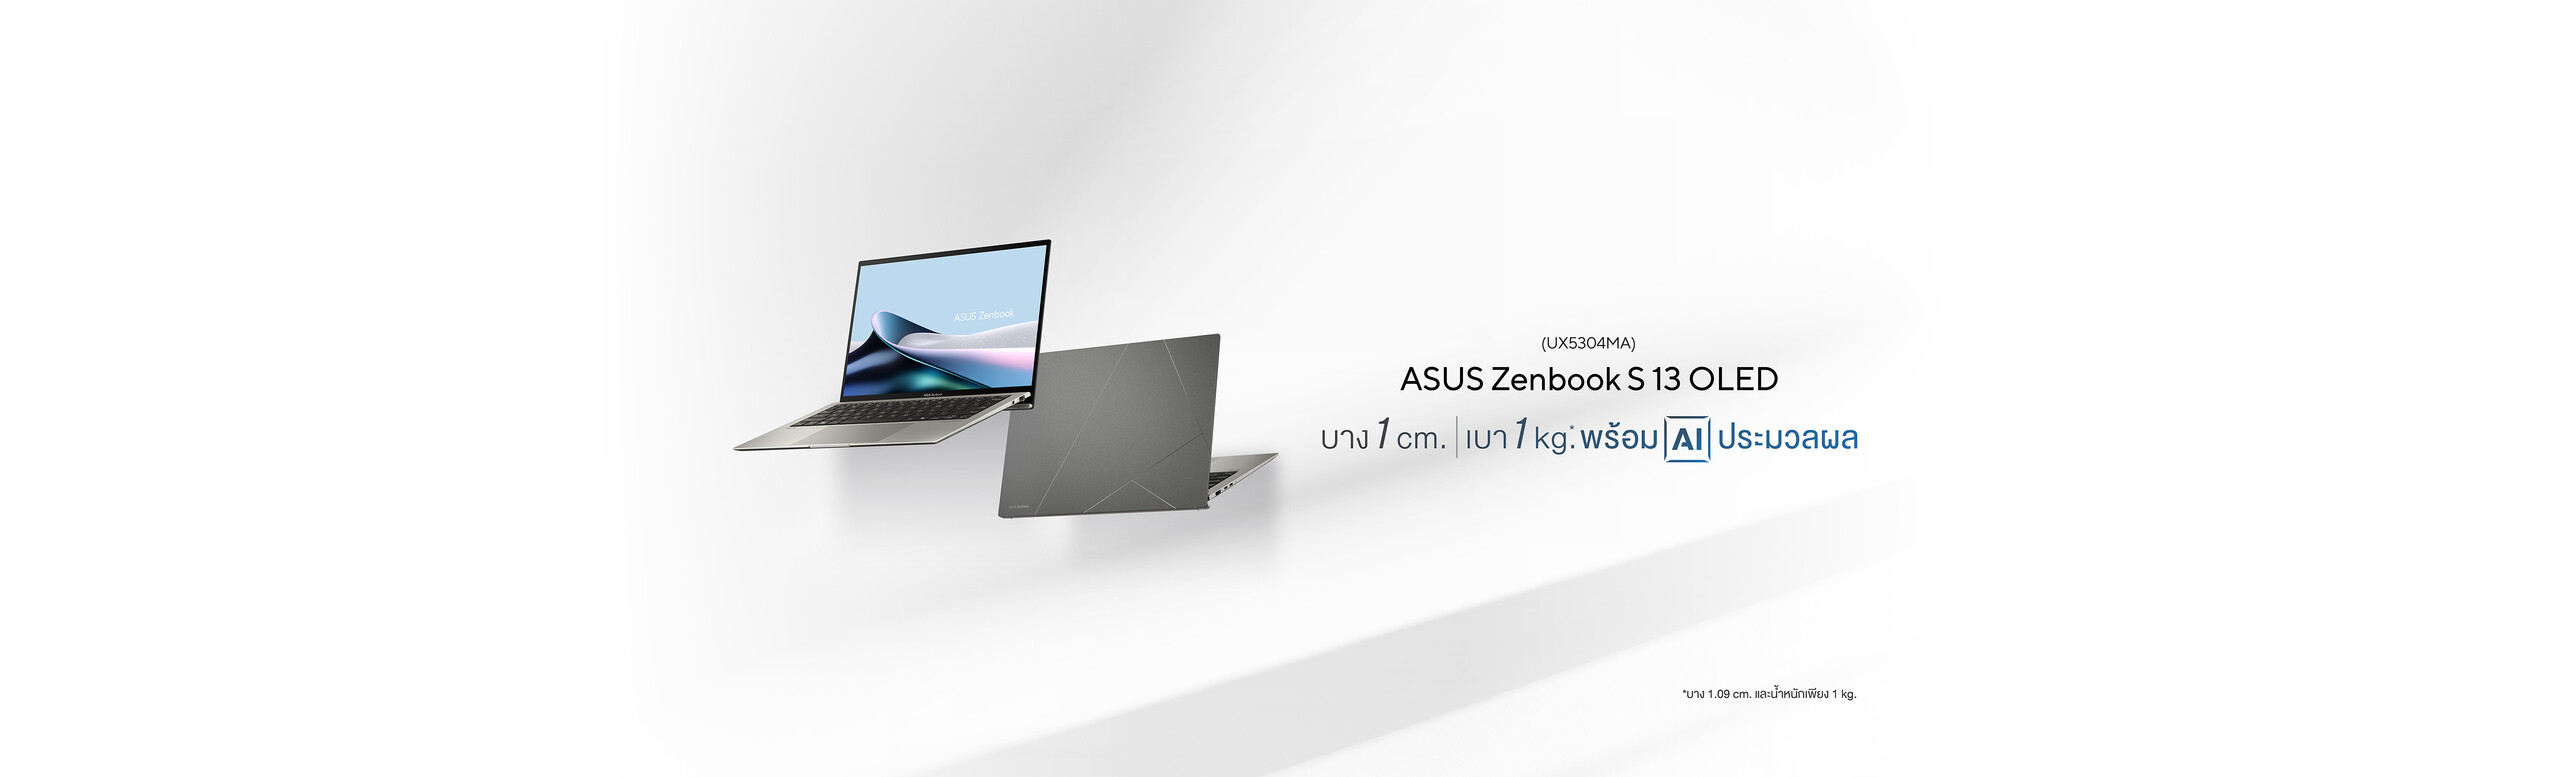 Zenbook S 13 OLED (UX5304)